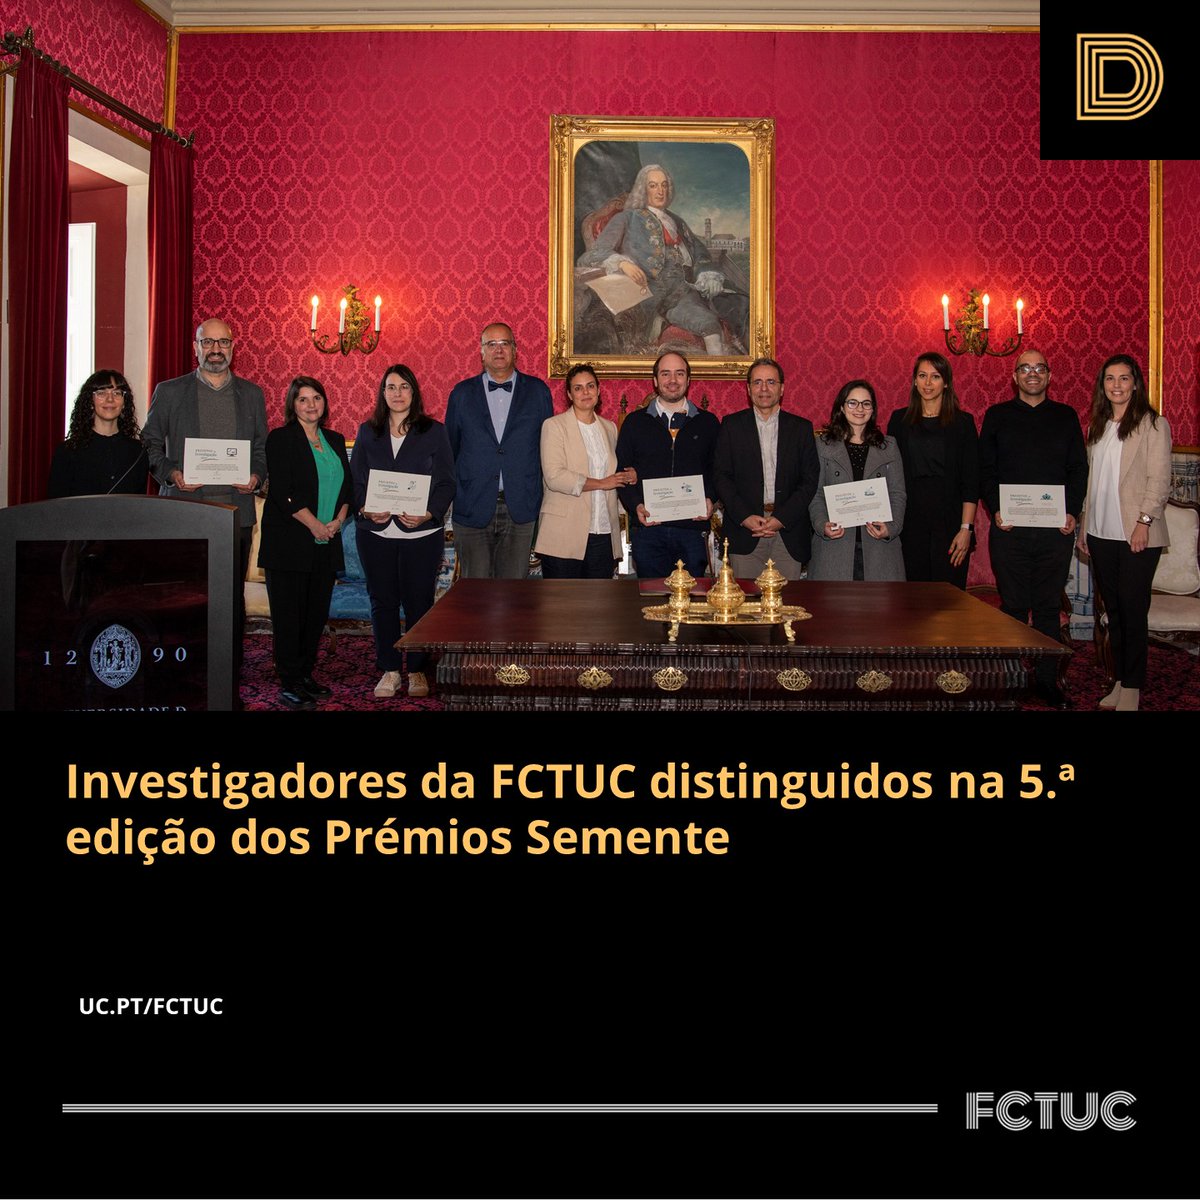 Investigadores da FCTUC distinguidos na 5.ª edição dos Prémios Semente. Mais informações em: uc.pt/fctuc/noticias…